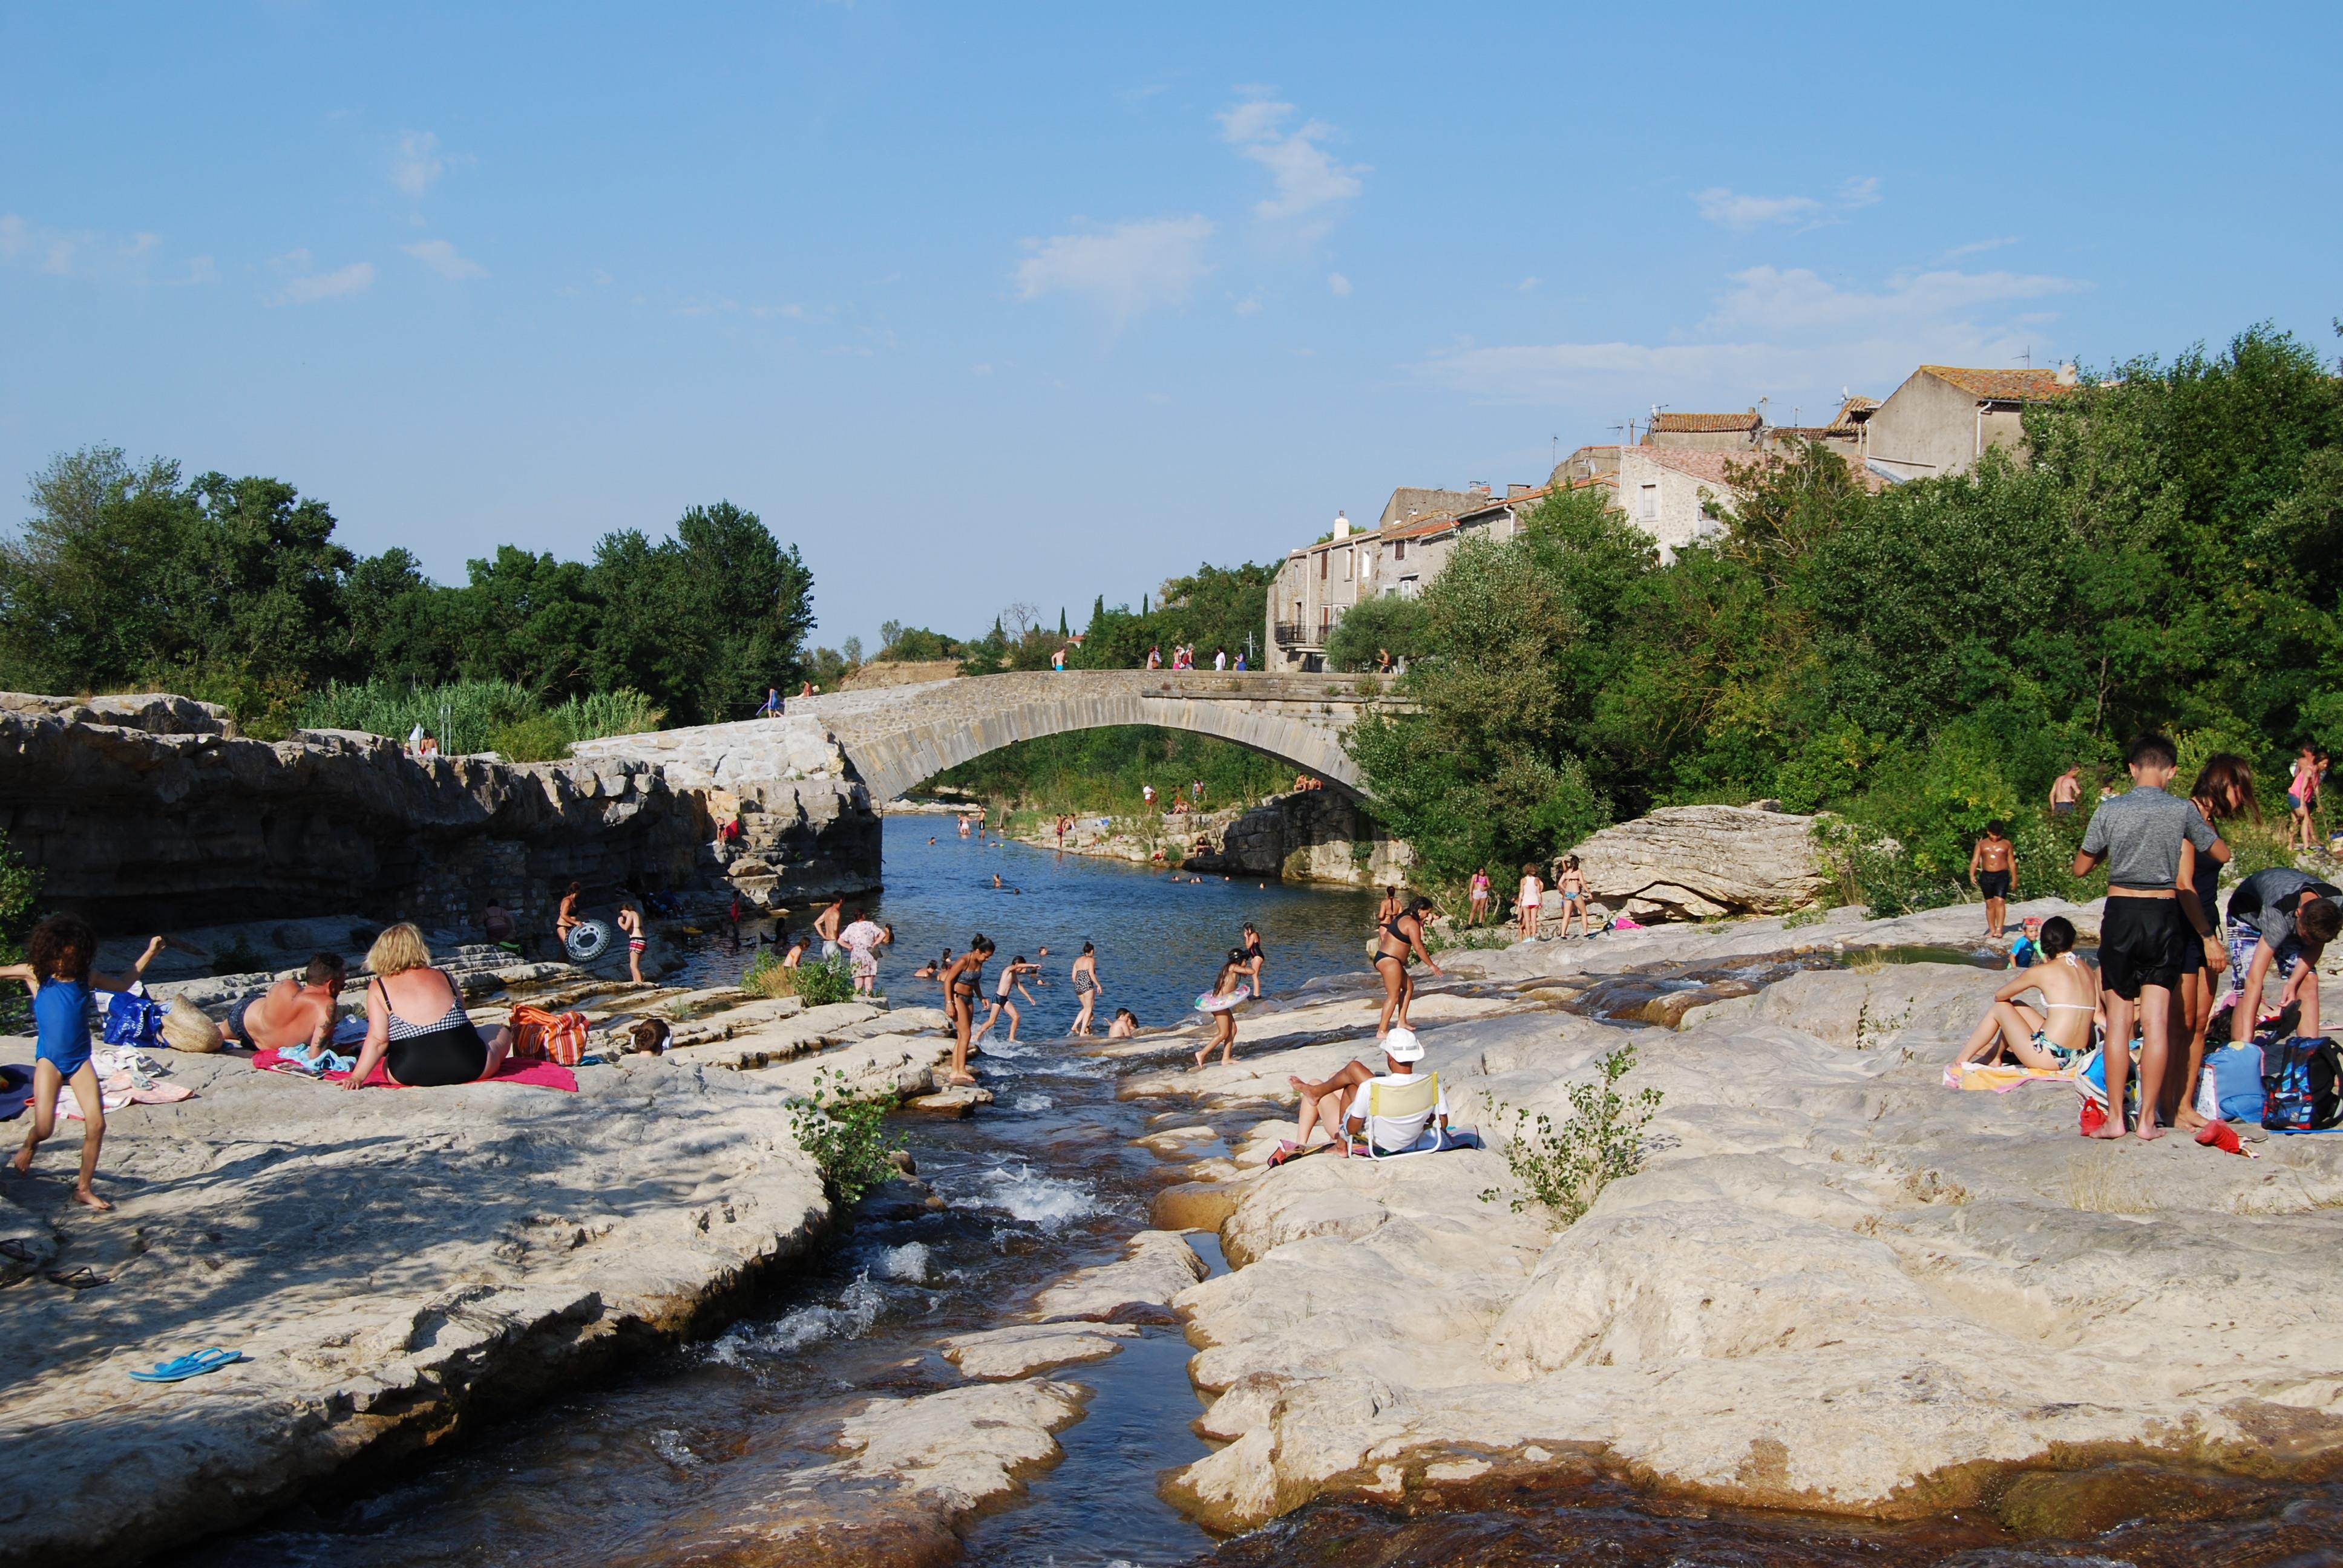 Bathing Sites Et Paysages La Pinède - Lezignan-Corbieres